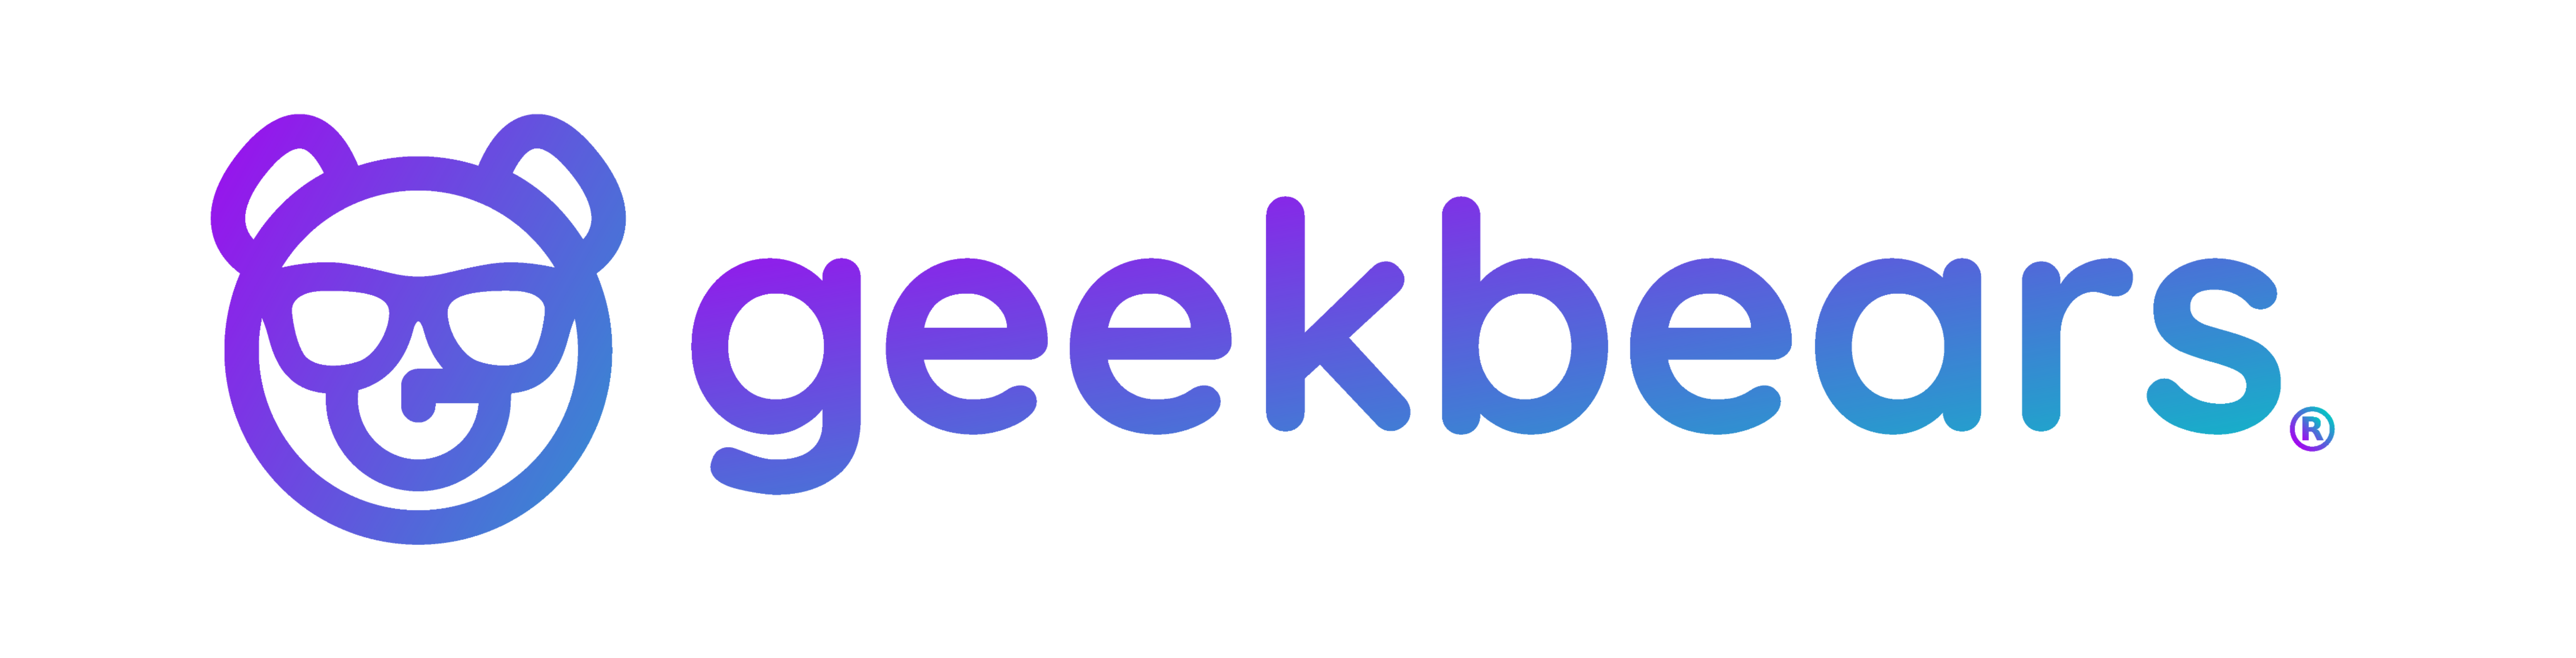 Geekbears logo